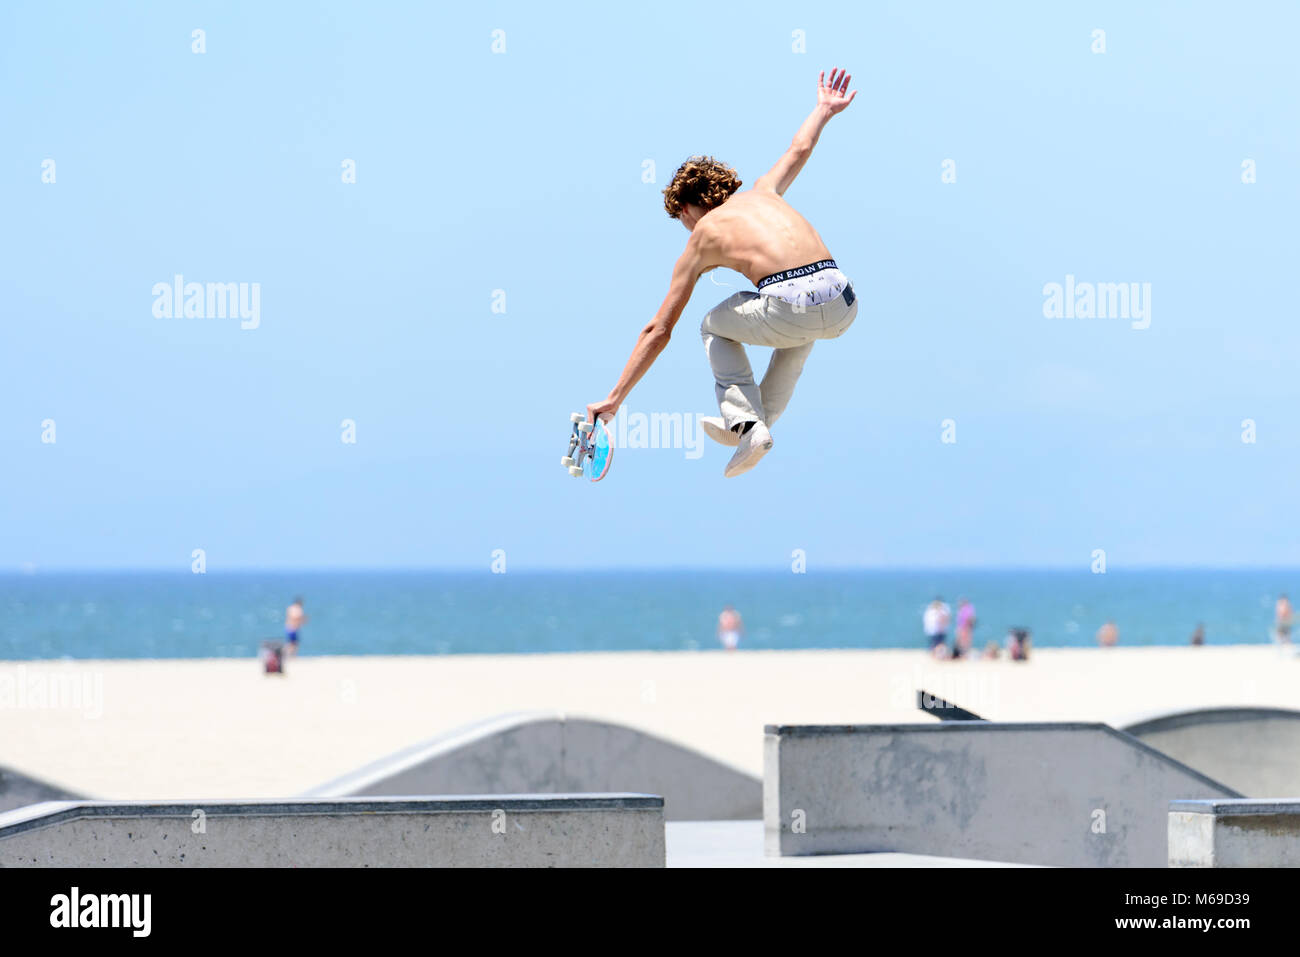 Junge skateboarder Am Skatepark am berühmten Venice Beach Boardwalk eine Der populärste Attraktion von Kalifornien. Stockfoto